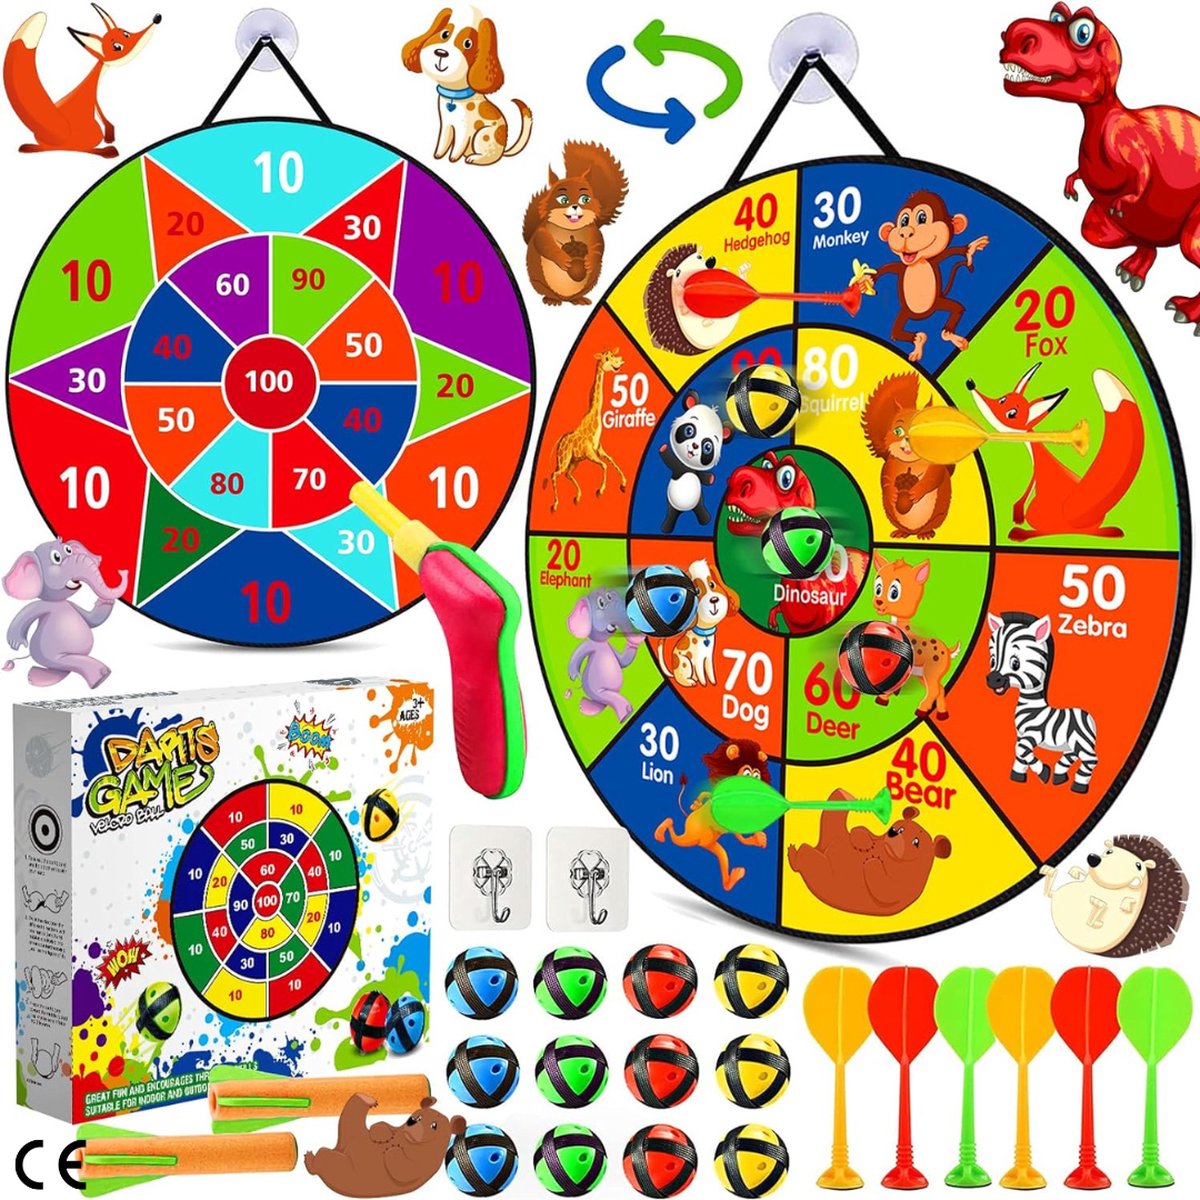 Dartset voor Kinderen - 66 cm Dubbelzijdig Veilig Darts Spel met 12 Kleverige Ballen, 6 Darts, Pistool, en Haken - Geschikt voor Jongens en Meisjes